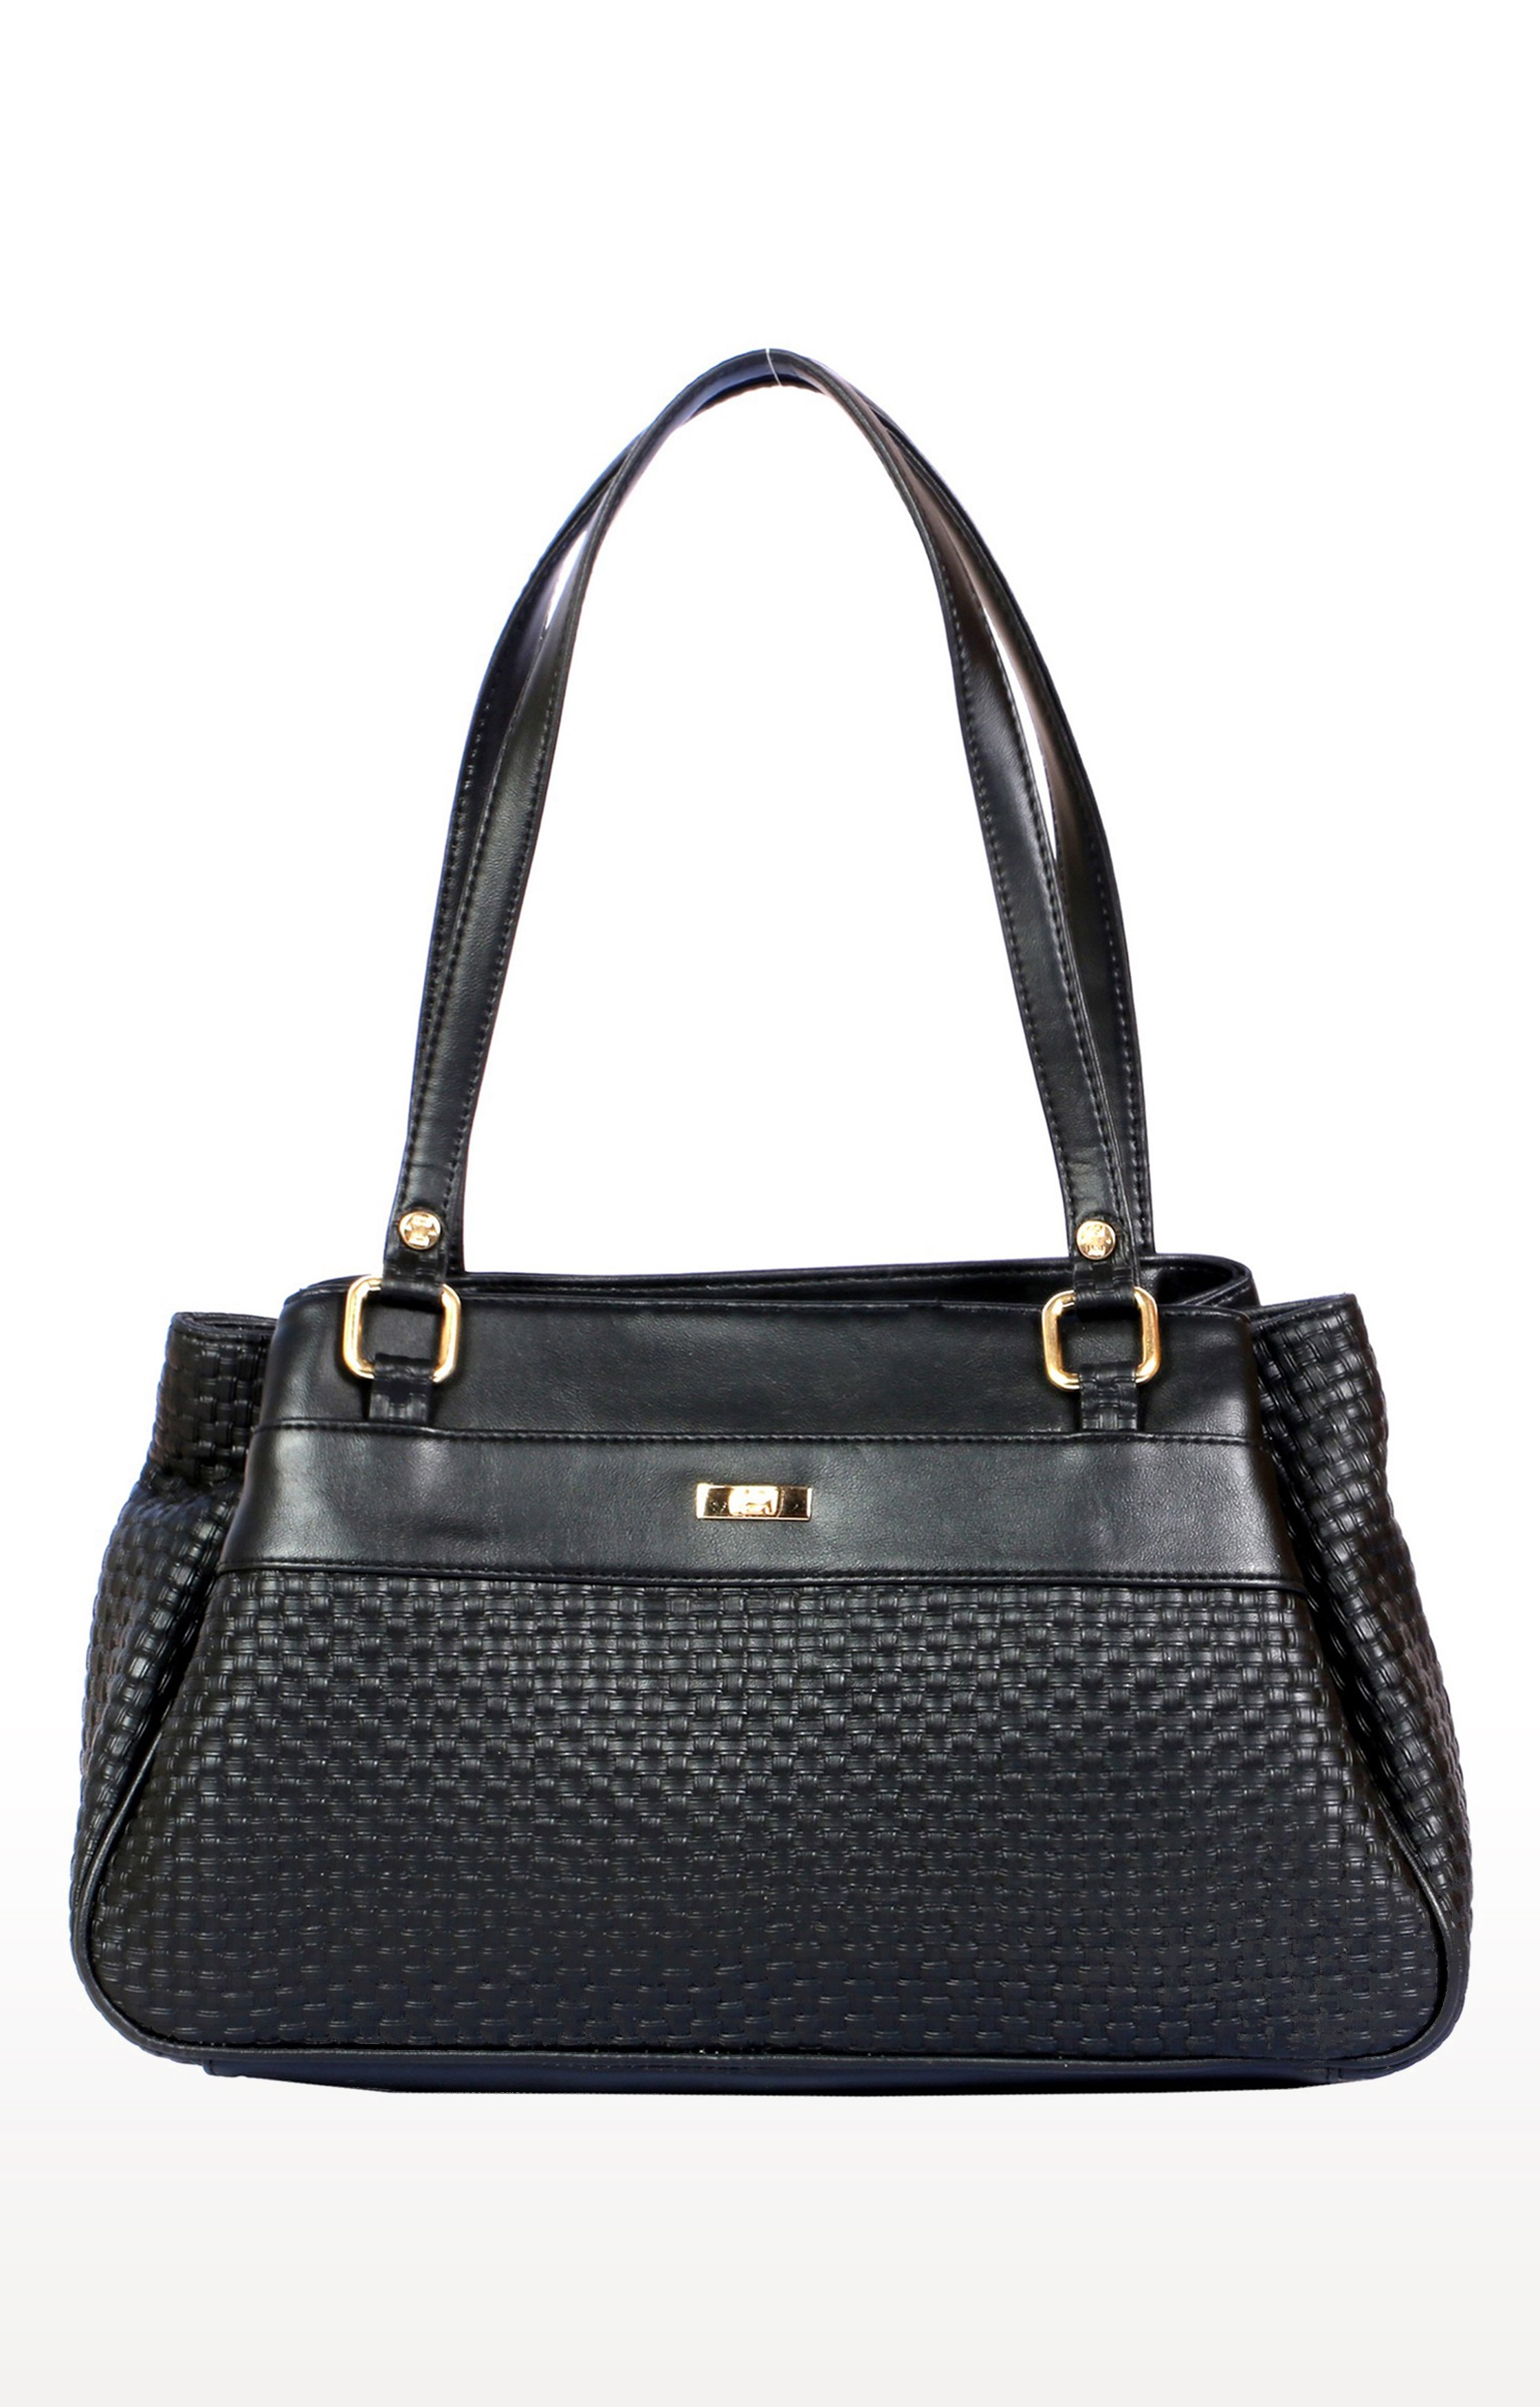 EMM | Lely's Women's Black Handbag